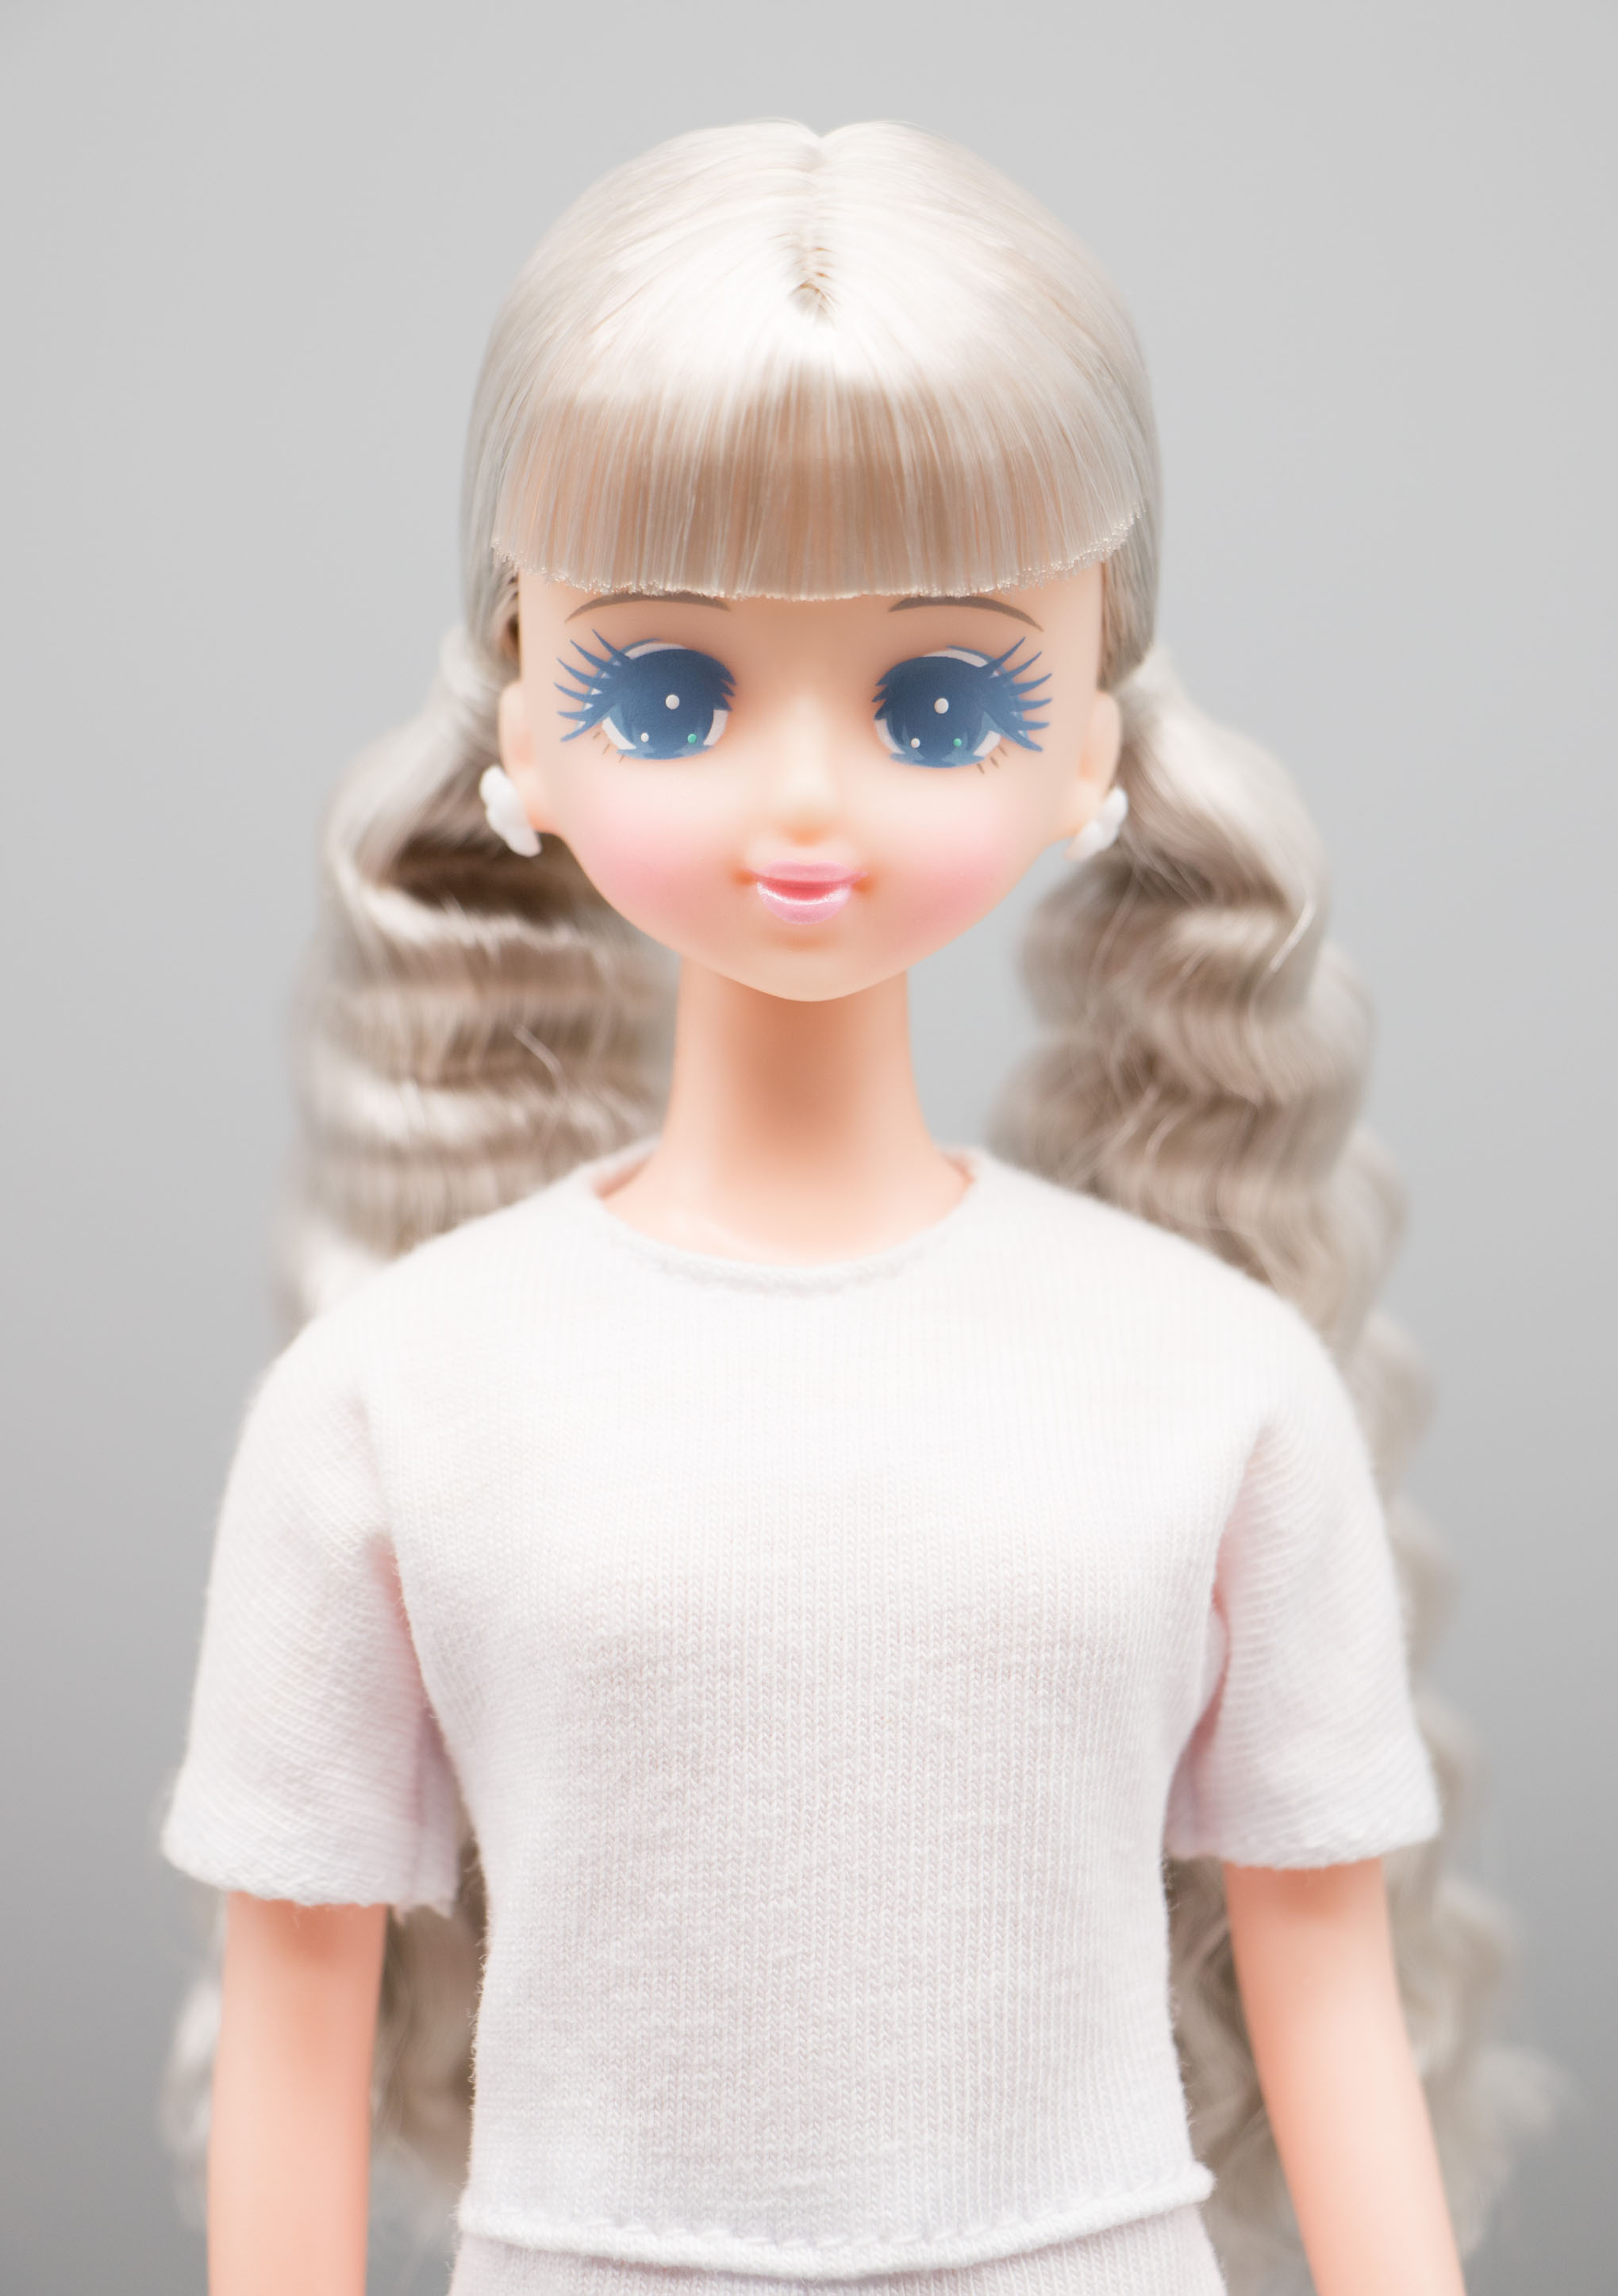 おしゃれ商品 レア オリジナルドール プラスチックケース入り ジェニー他 リカちゃんキャッスル おもちゃ/人形